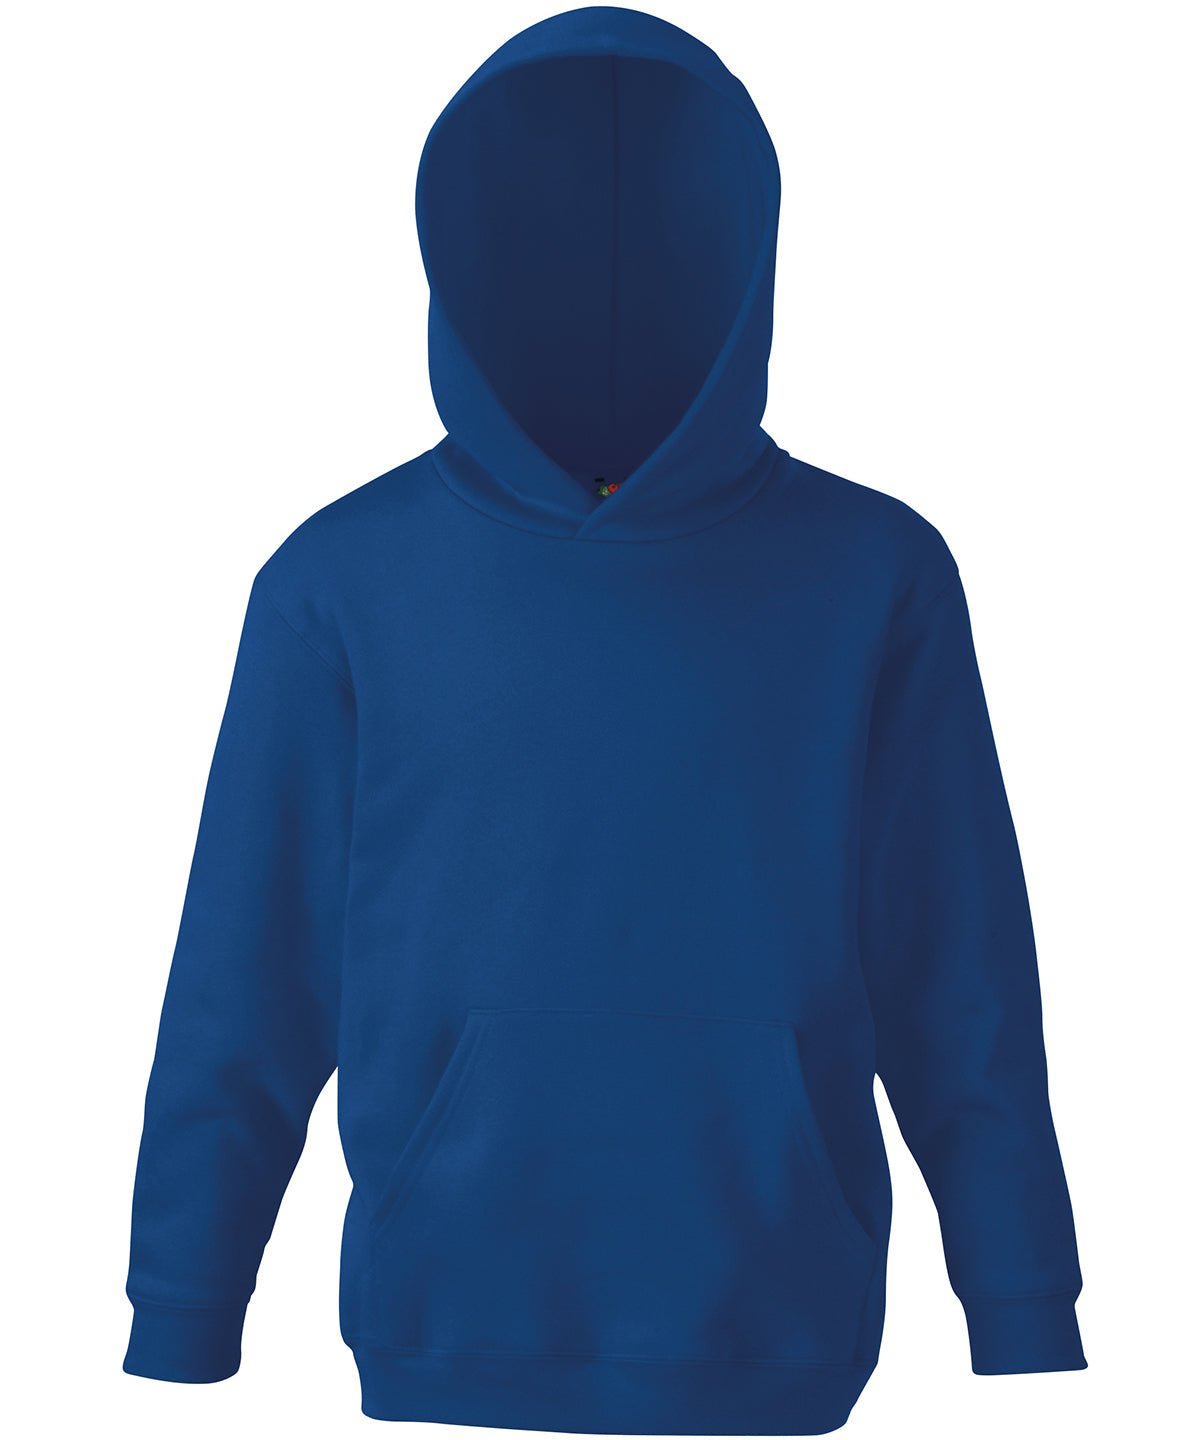 Personalised Hoodies - Black Fruit of the Loom Kids classic hooded sweatshirt